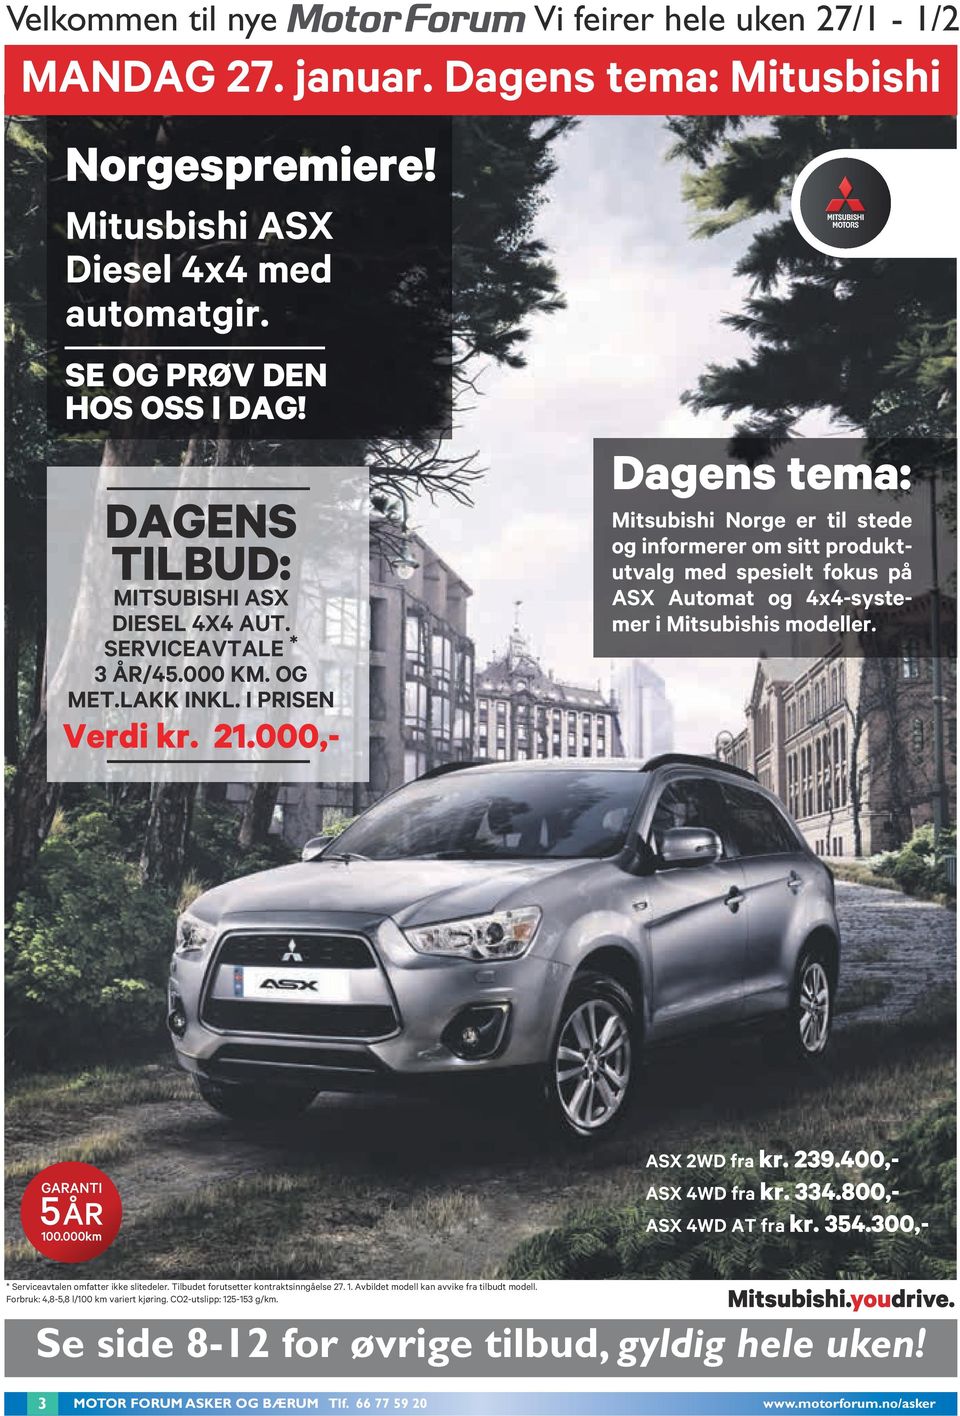 000,- Dagens tema: Mitsubishi Norge er til stede og informerer om sitt produktutvalg med spesielt fokus på ASX Automat og 4x4-systemer i Mitsubishis modeller. ASX 2WD fra kr. 239.